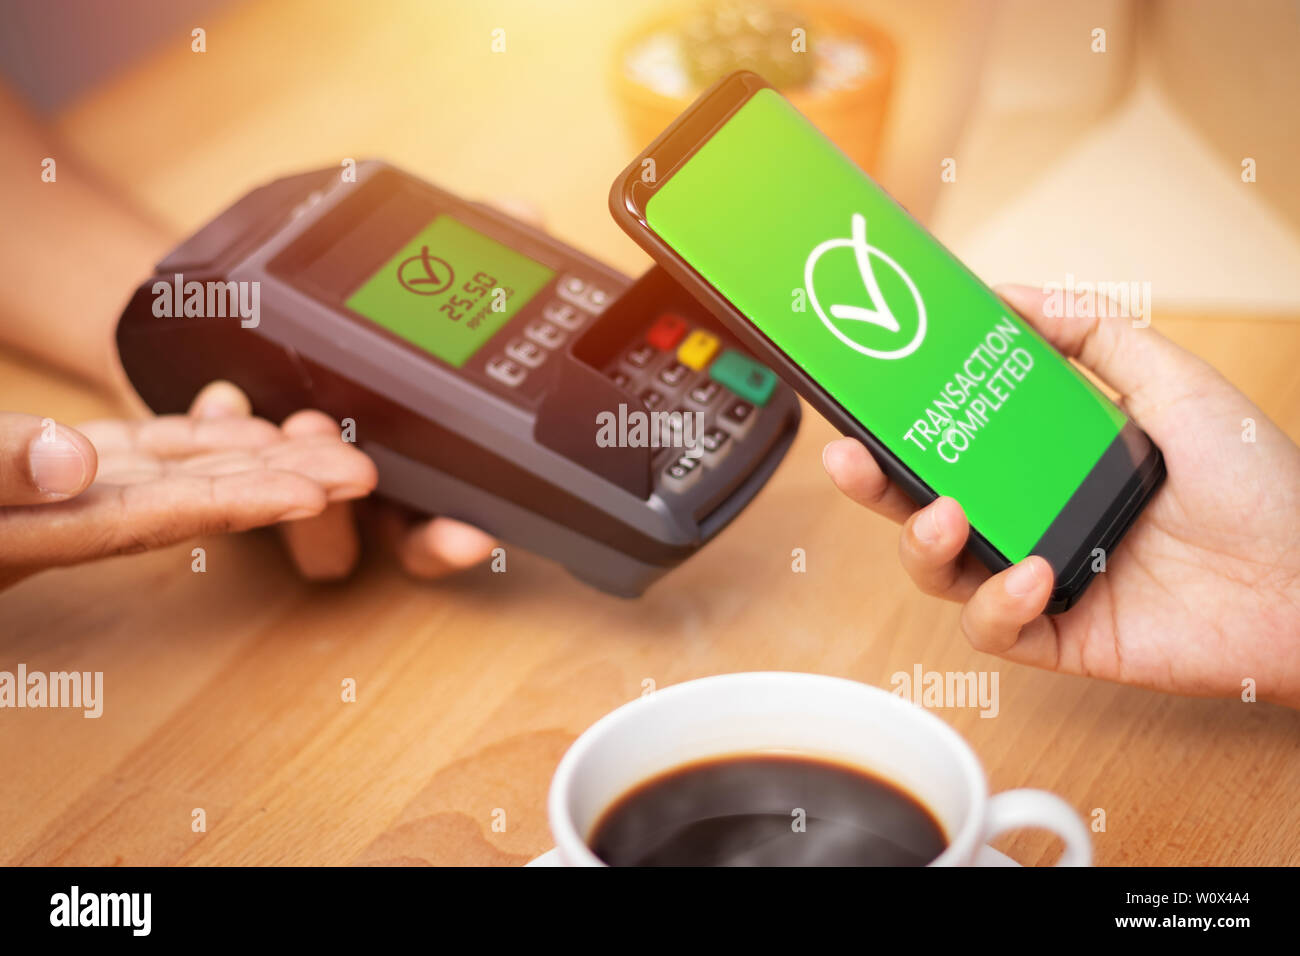 Società senza contanti, cliente pagamento fattura tramite lo smartphone utilizzando la tecnologia NFC in corrispondenza del punto terminale di vendita in cafe. digitale mobile wallet con tecnologia Foto Stock